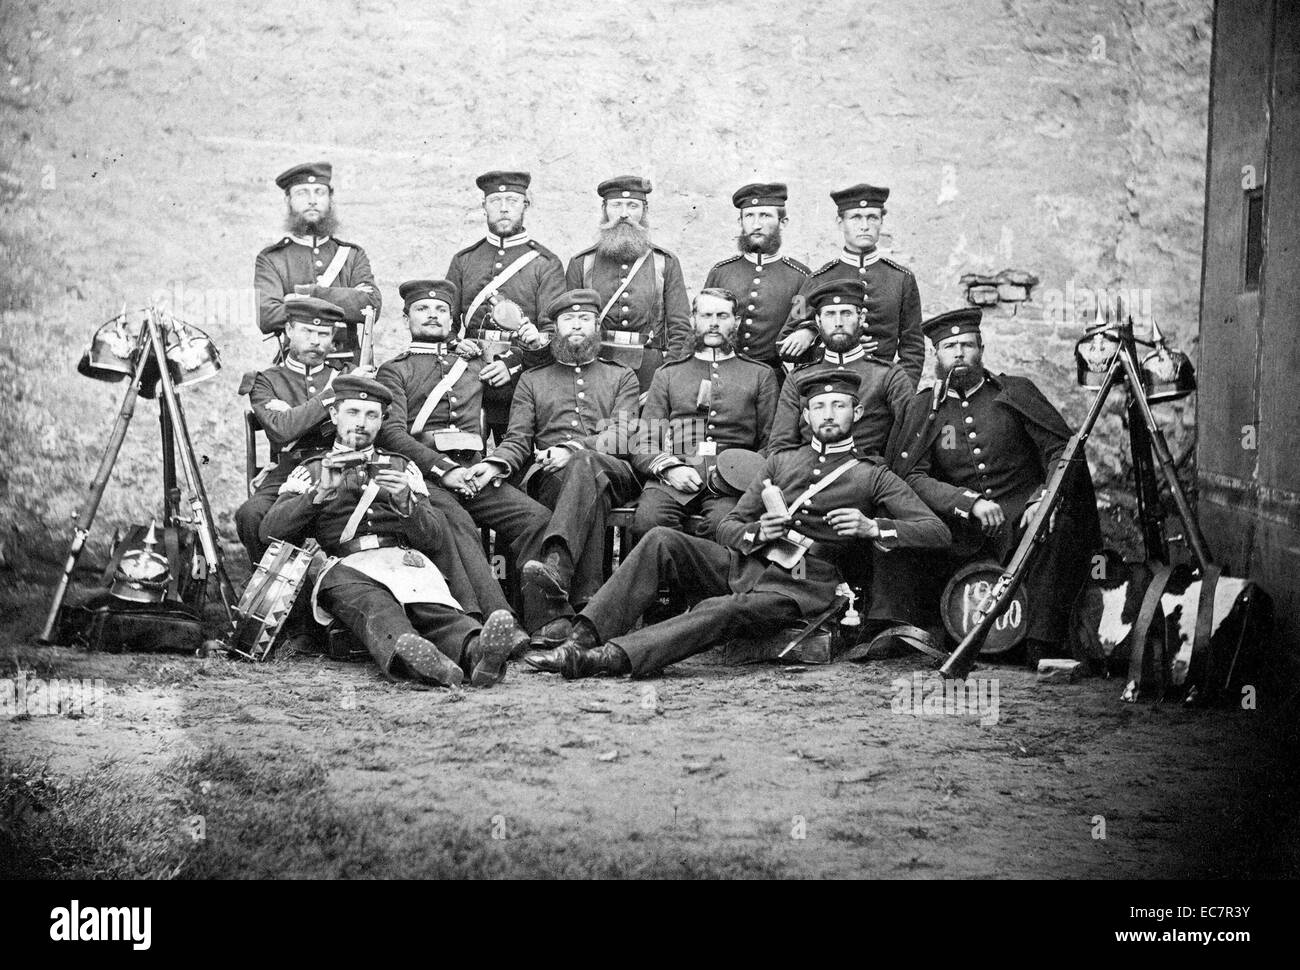 Soldats prussiens photographiés au cours de la guerre austro-prussienne de 1866. Banque D'Images